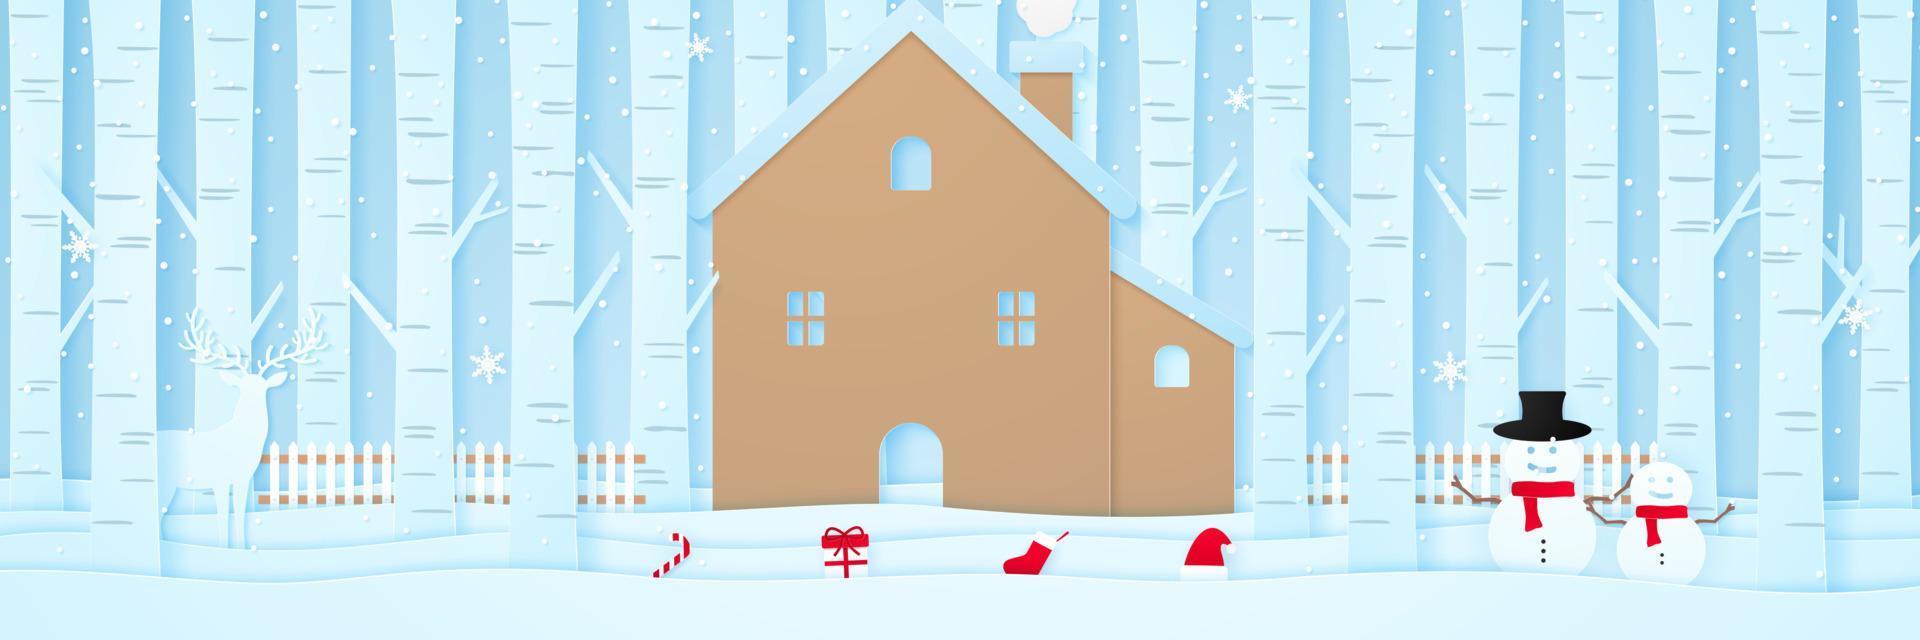 joyeux noël, maison avec rennes, bonhomme de neige, trucs de noël, clôture et pins sur neige dans un paysage d'hiver avec des chutes de neige, style art papier vecteur